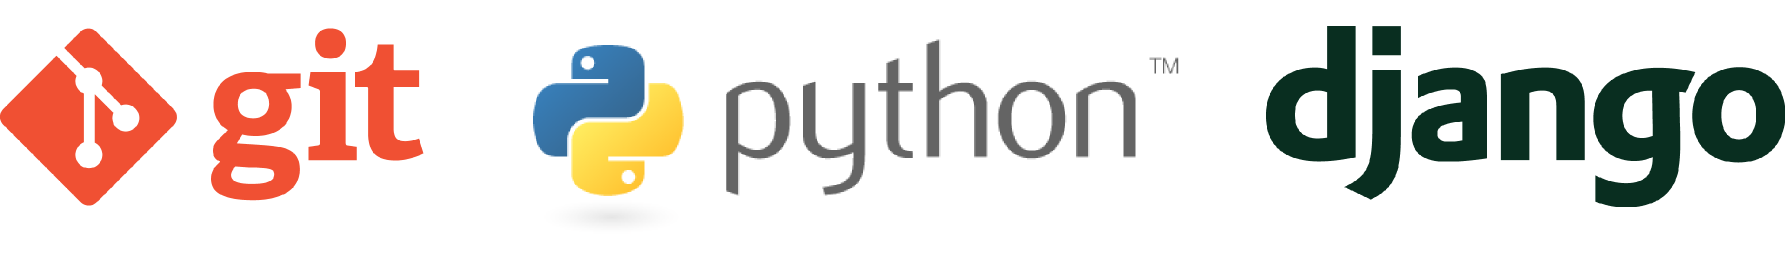 Git, Python, and Django logos.<span
data-label="fig:software-logos"></span>